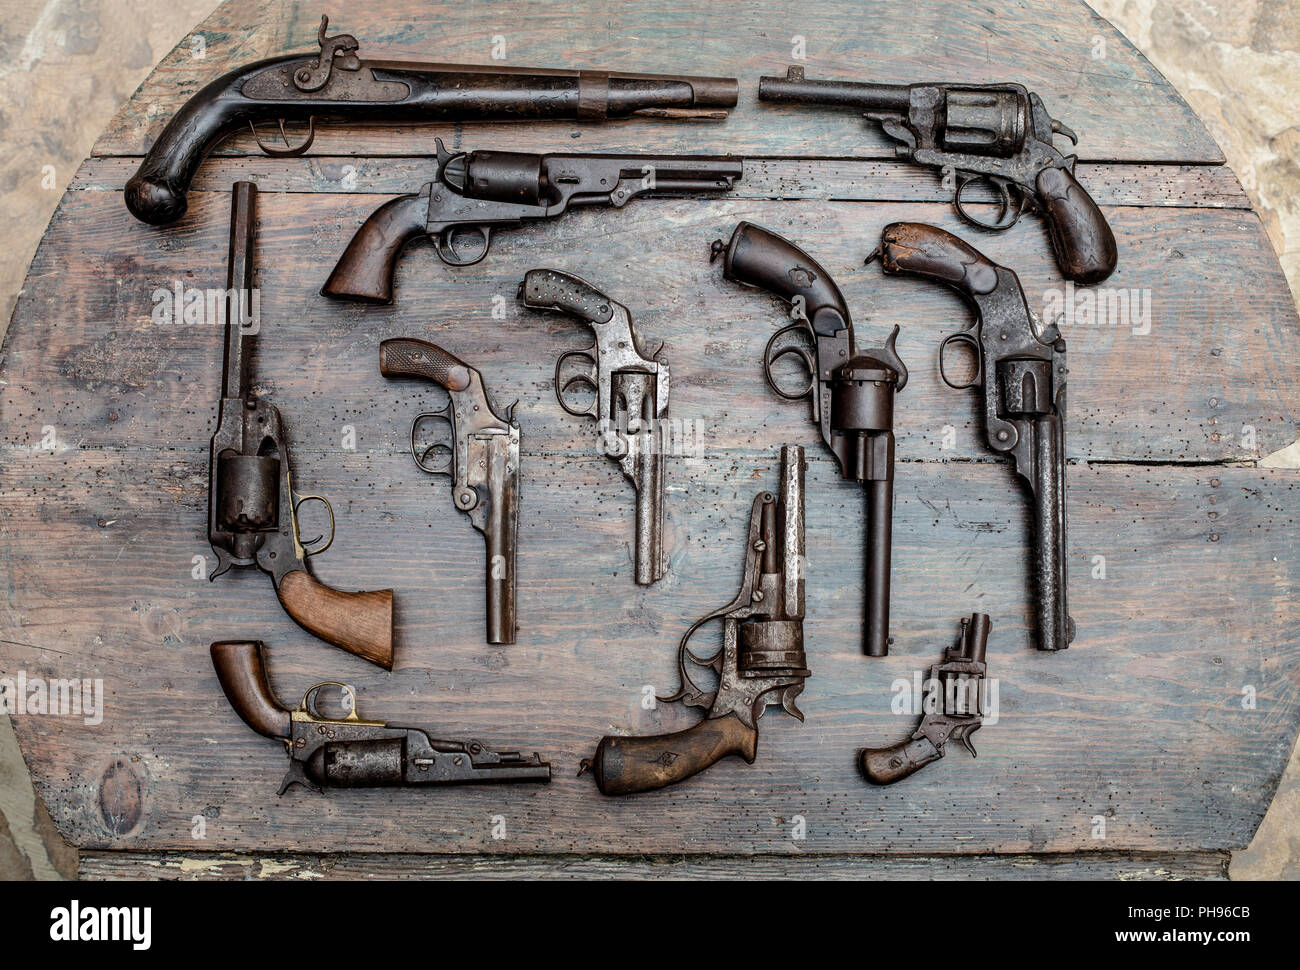 Verschiedene Arten von Waffen in der Nähe zu sehen, gegen Holz- Hintergrund  Stockfotografie - Alamy